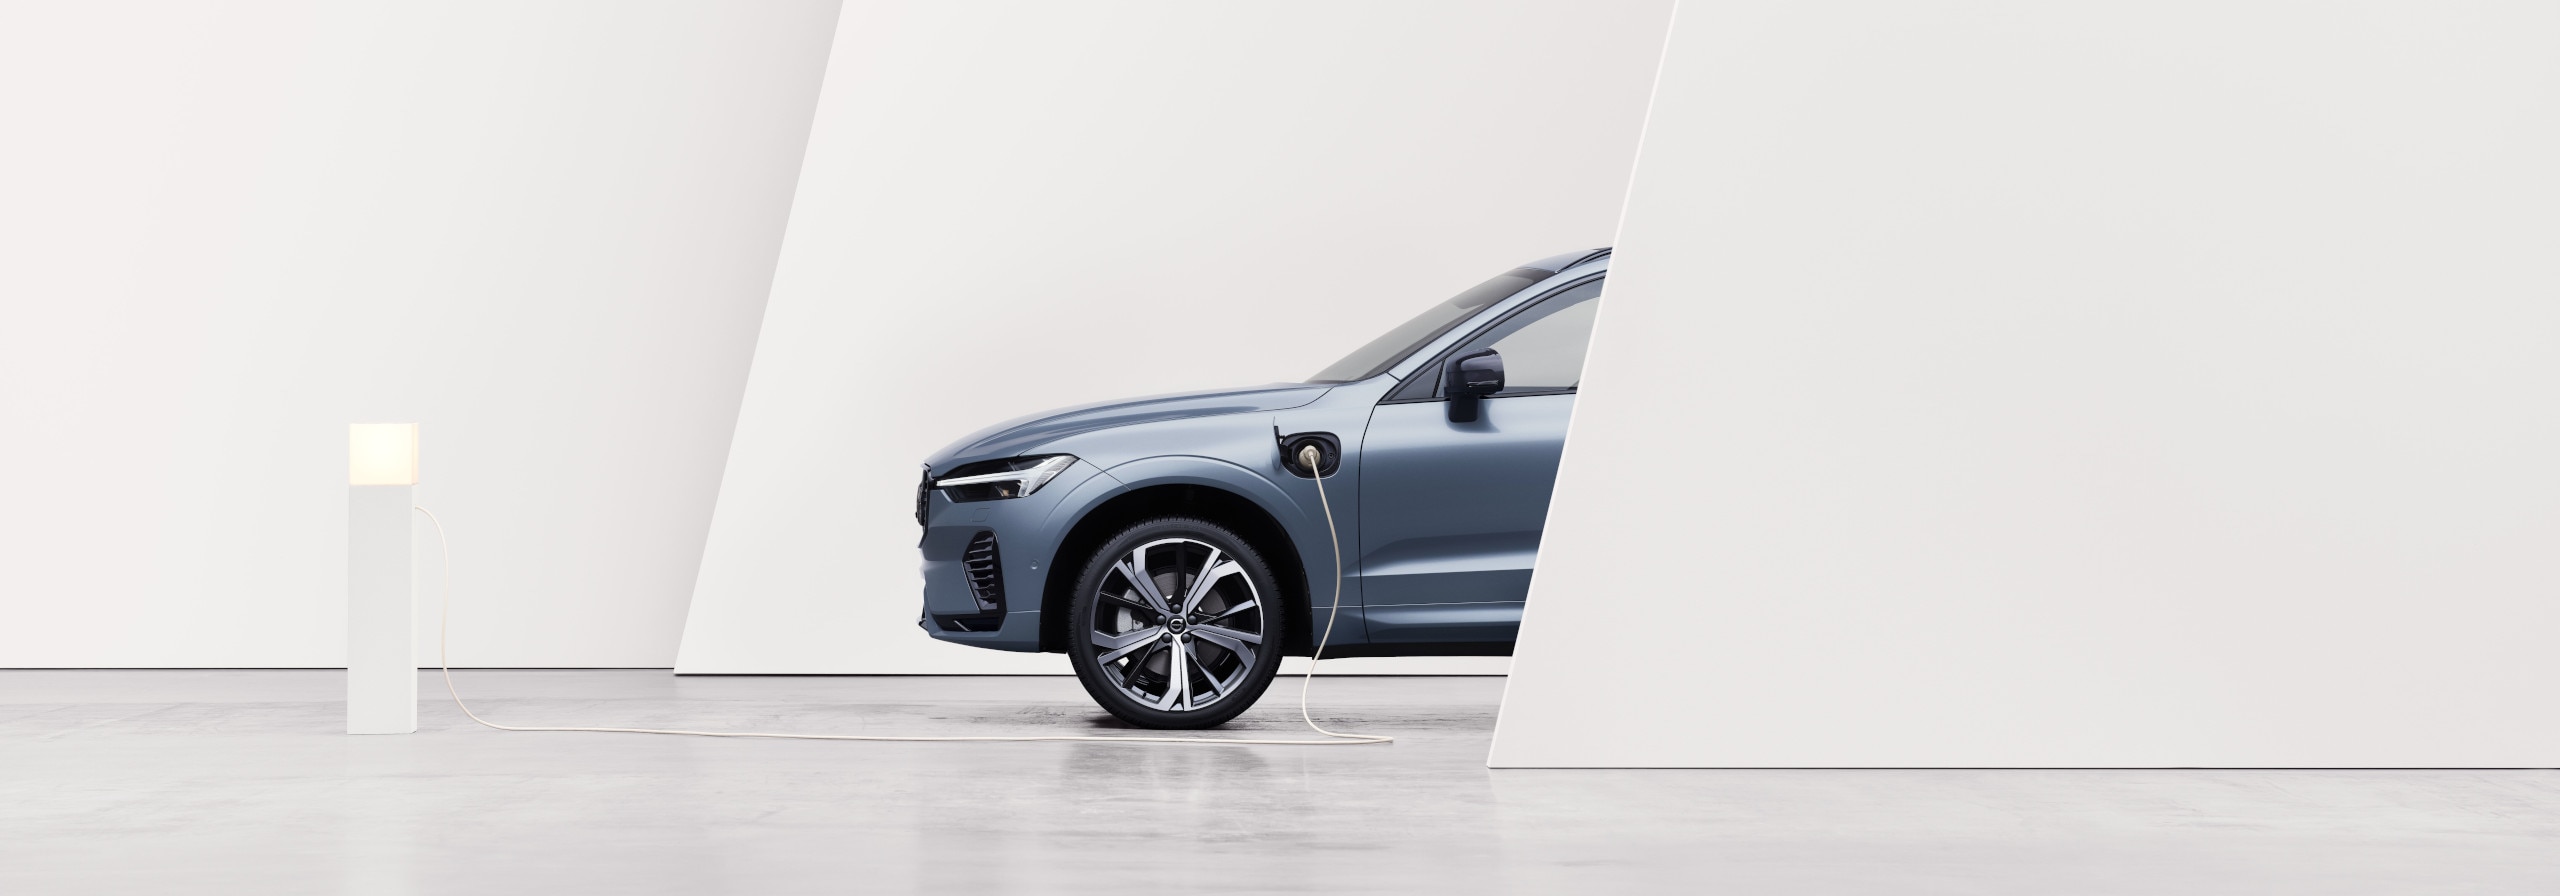 Ein Volvo Fahrzeug wird in einer abstrakten Landschaft geladen.